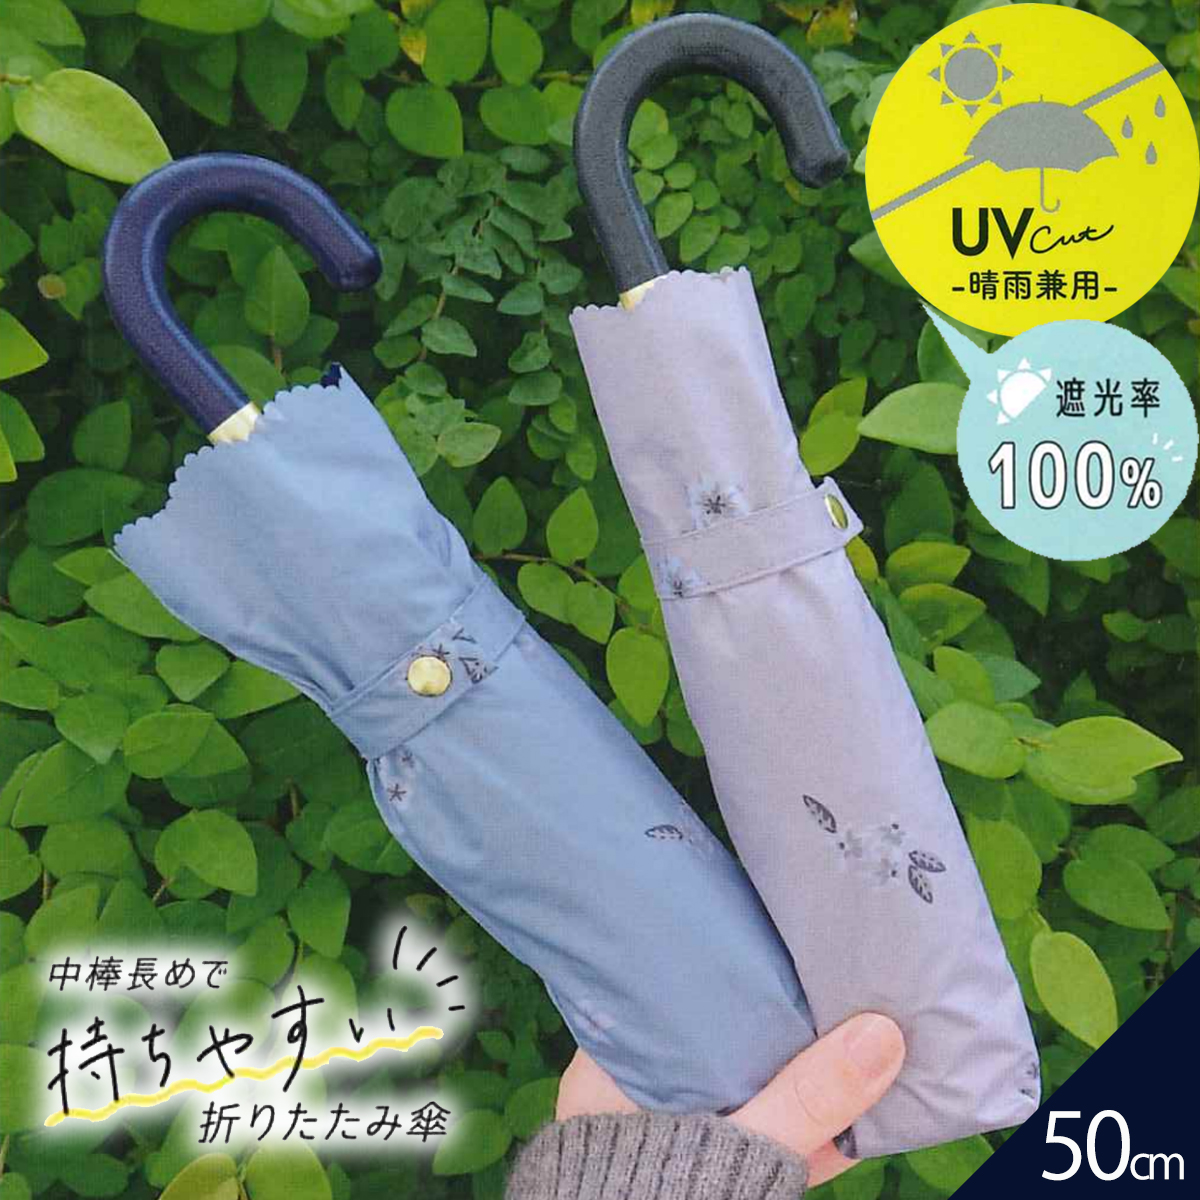 【CRUX】スージングフラワー 50cm UVカット 折りたたみ 晴雨兼用折傘 婦人傘